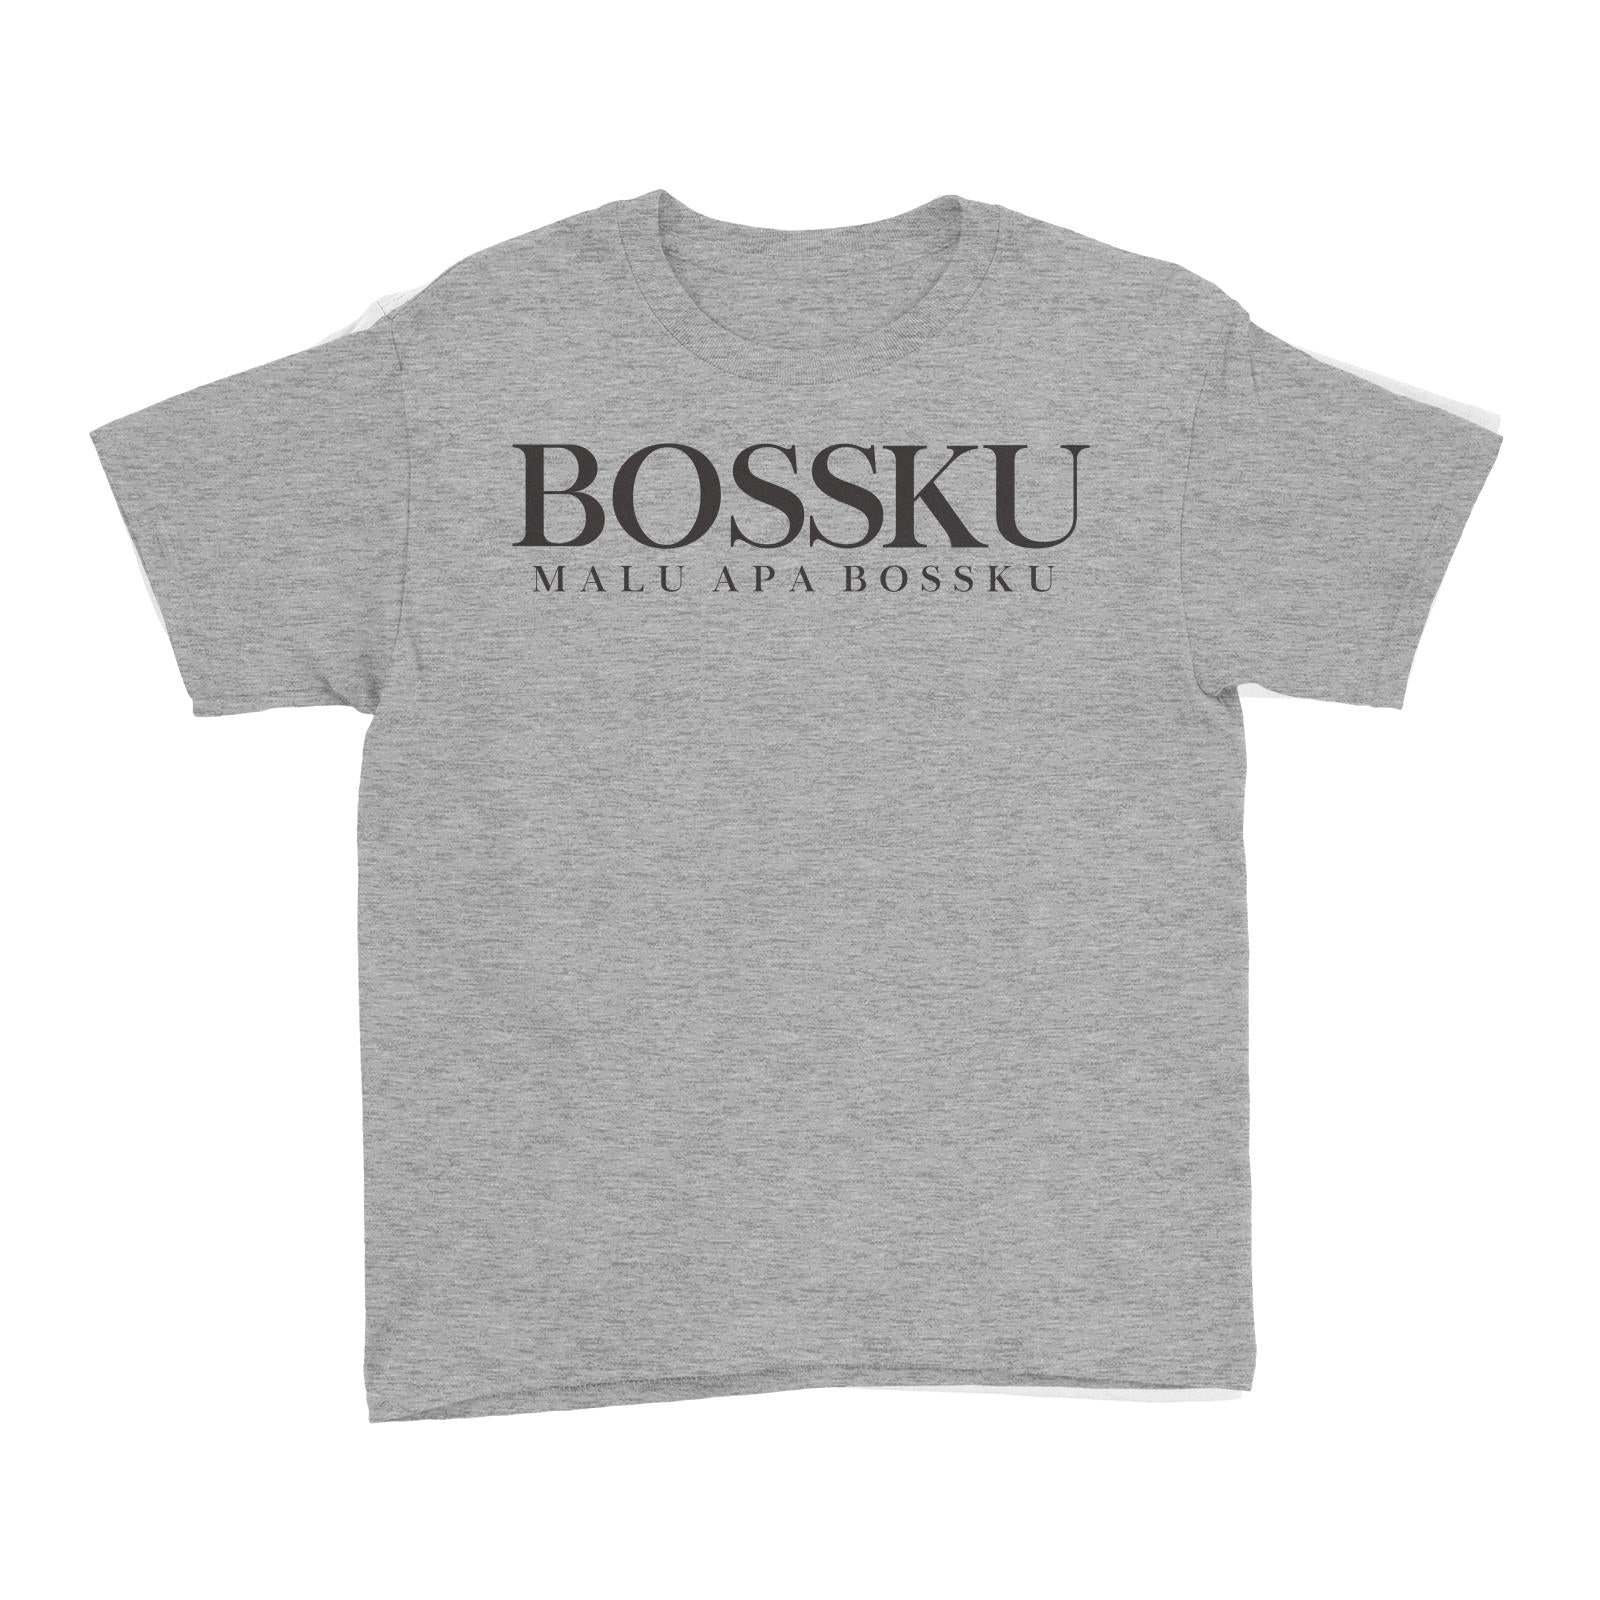 Slang Statement Bossku Malu Apa Bossku Kid's T-Shirt